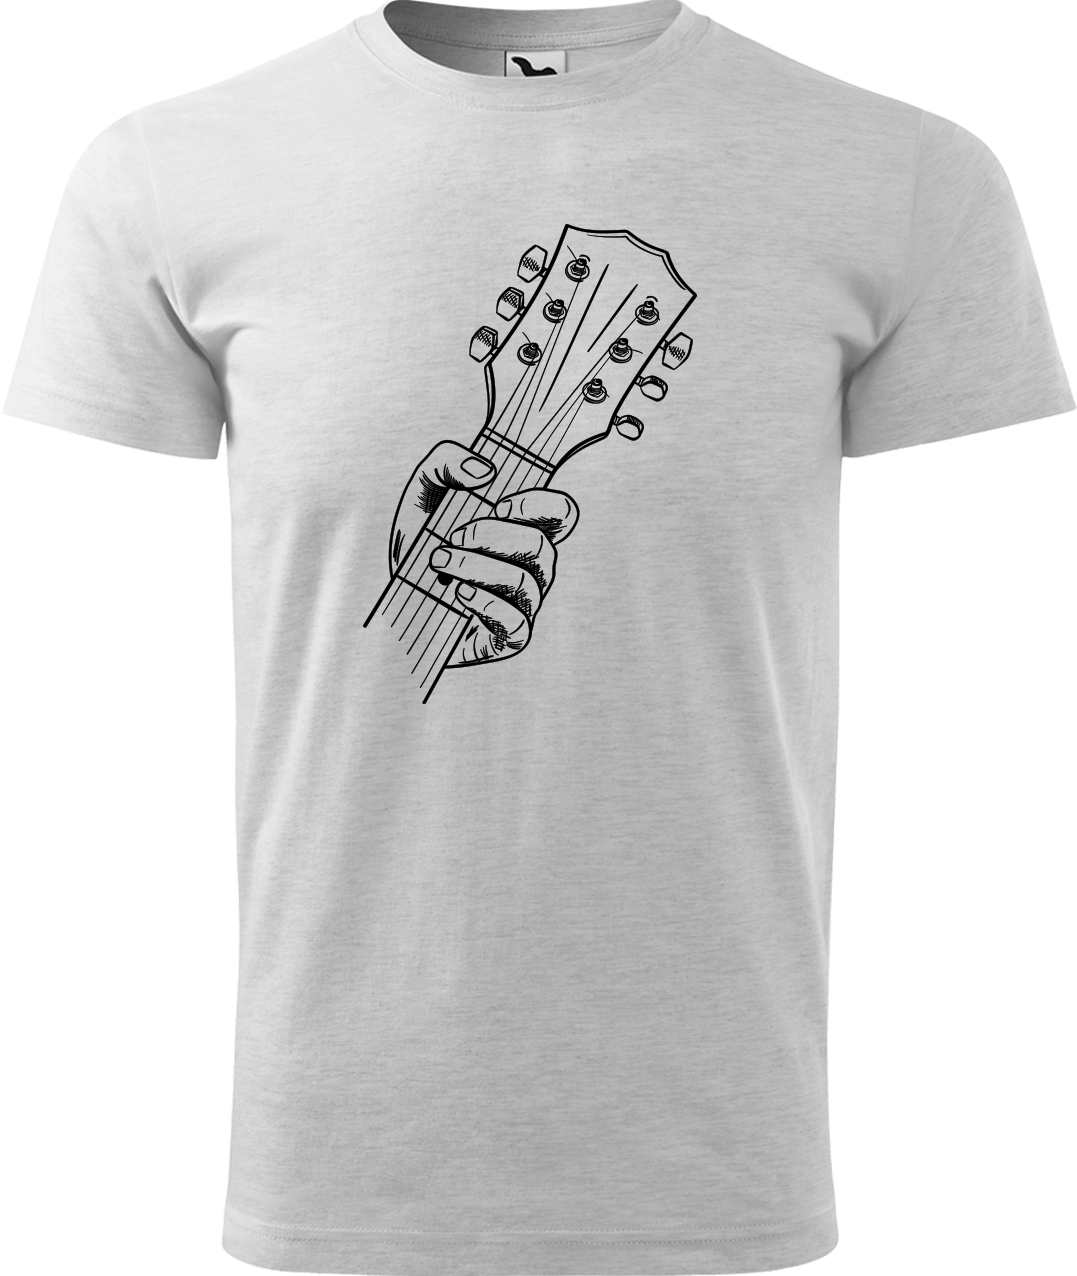 Pánské tričko s kytarou - Hlava kytary Velikost: S, Barva: Světle šedý melír (03)